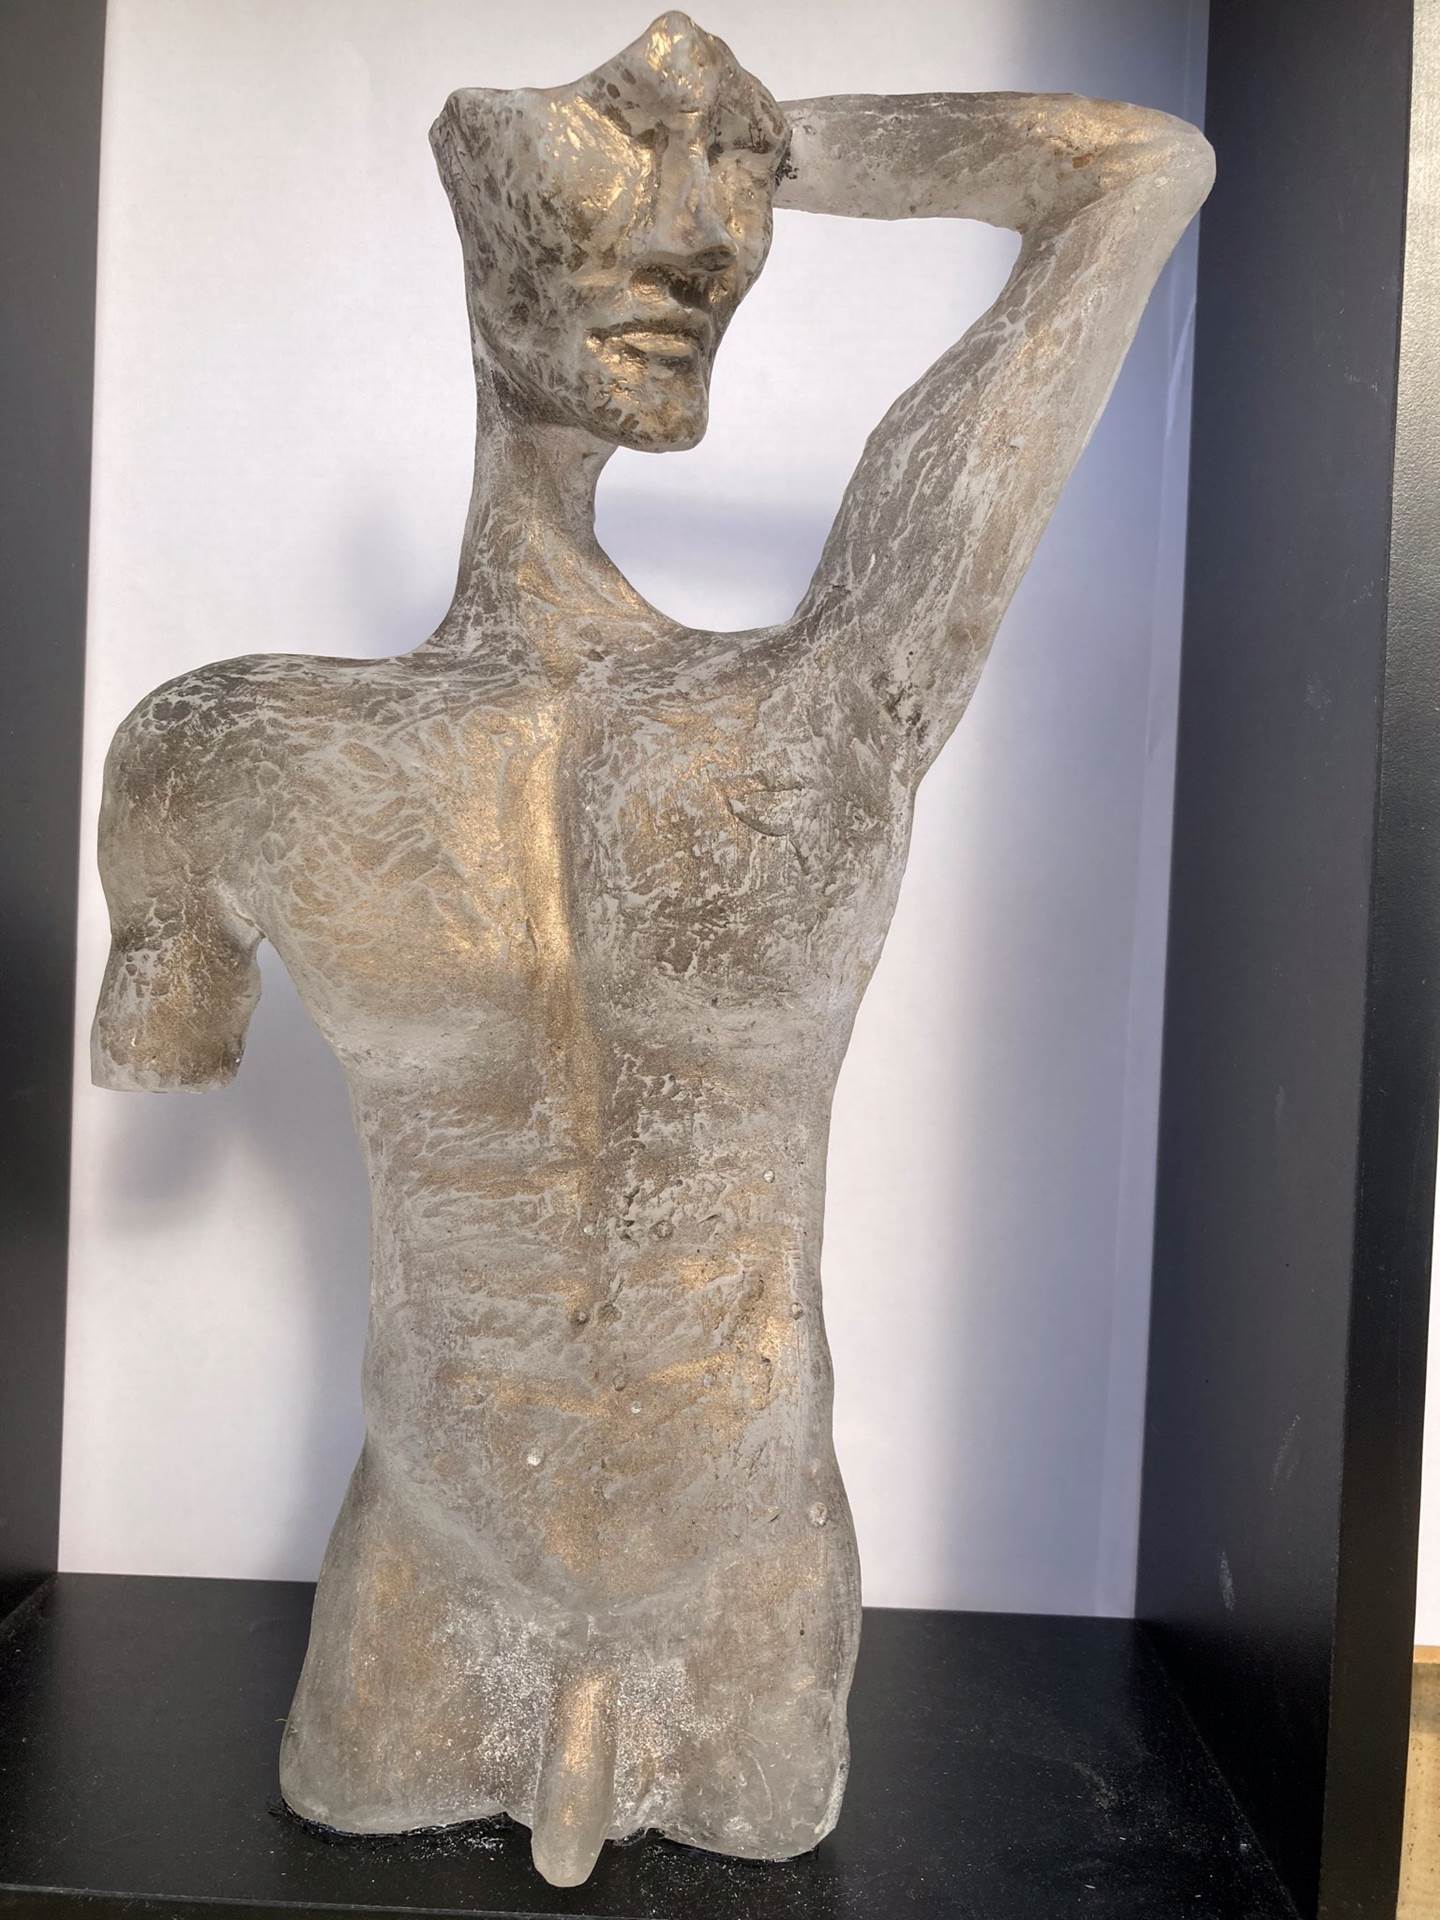 O gajo, original Figura humana Técnica Mixta Escultura de Marcia Ruberti